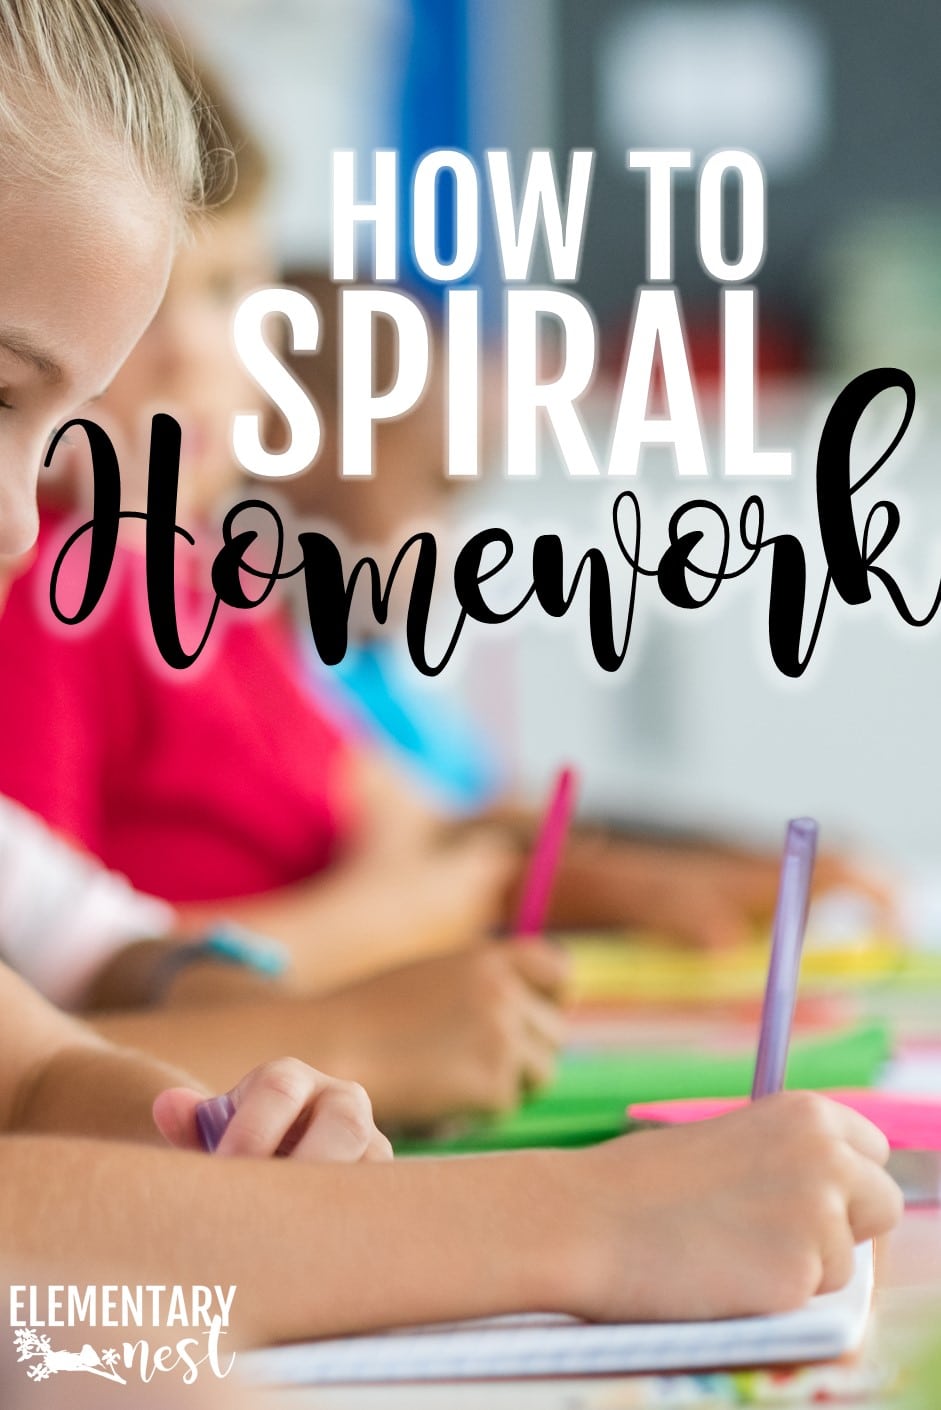 Daily spiraling homework ideas